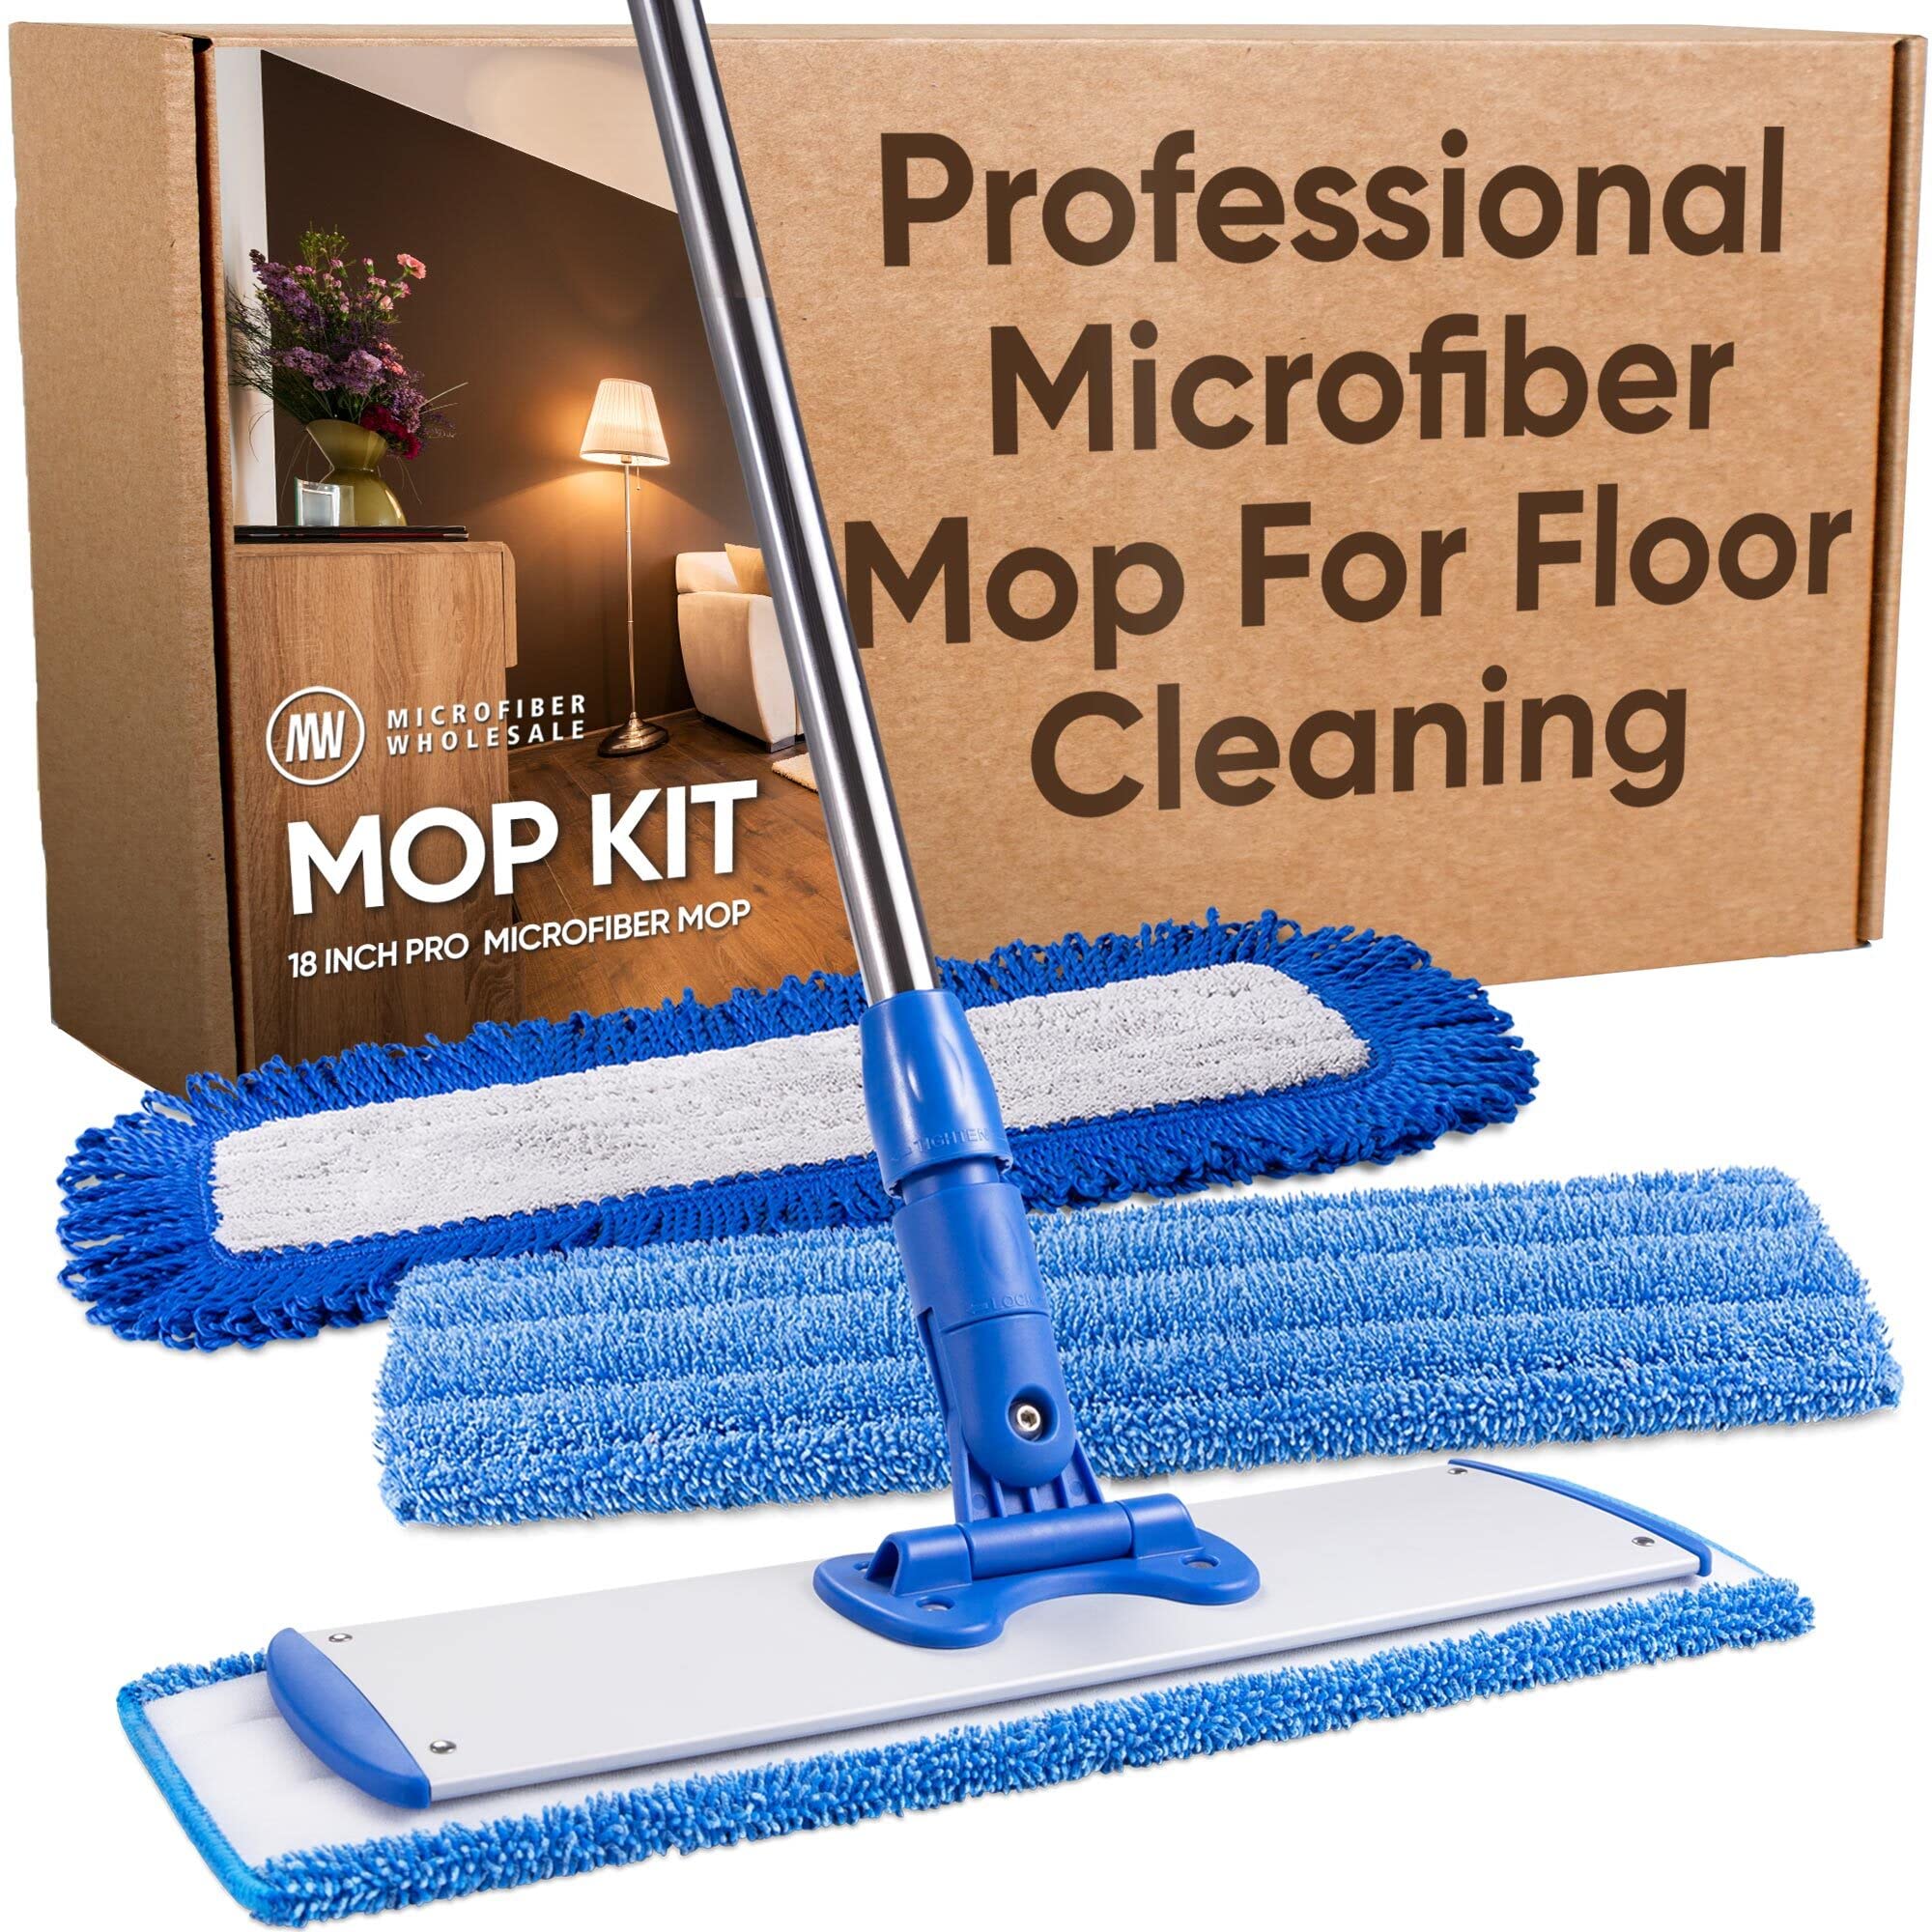 Microfiber Mop Review!